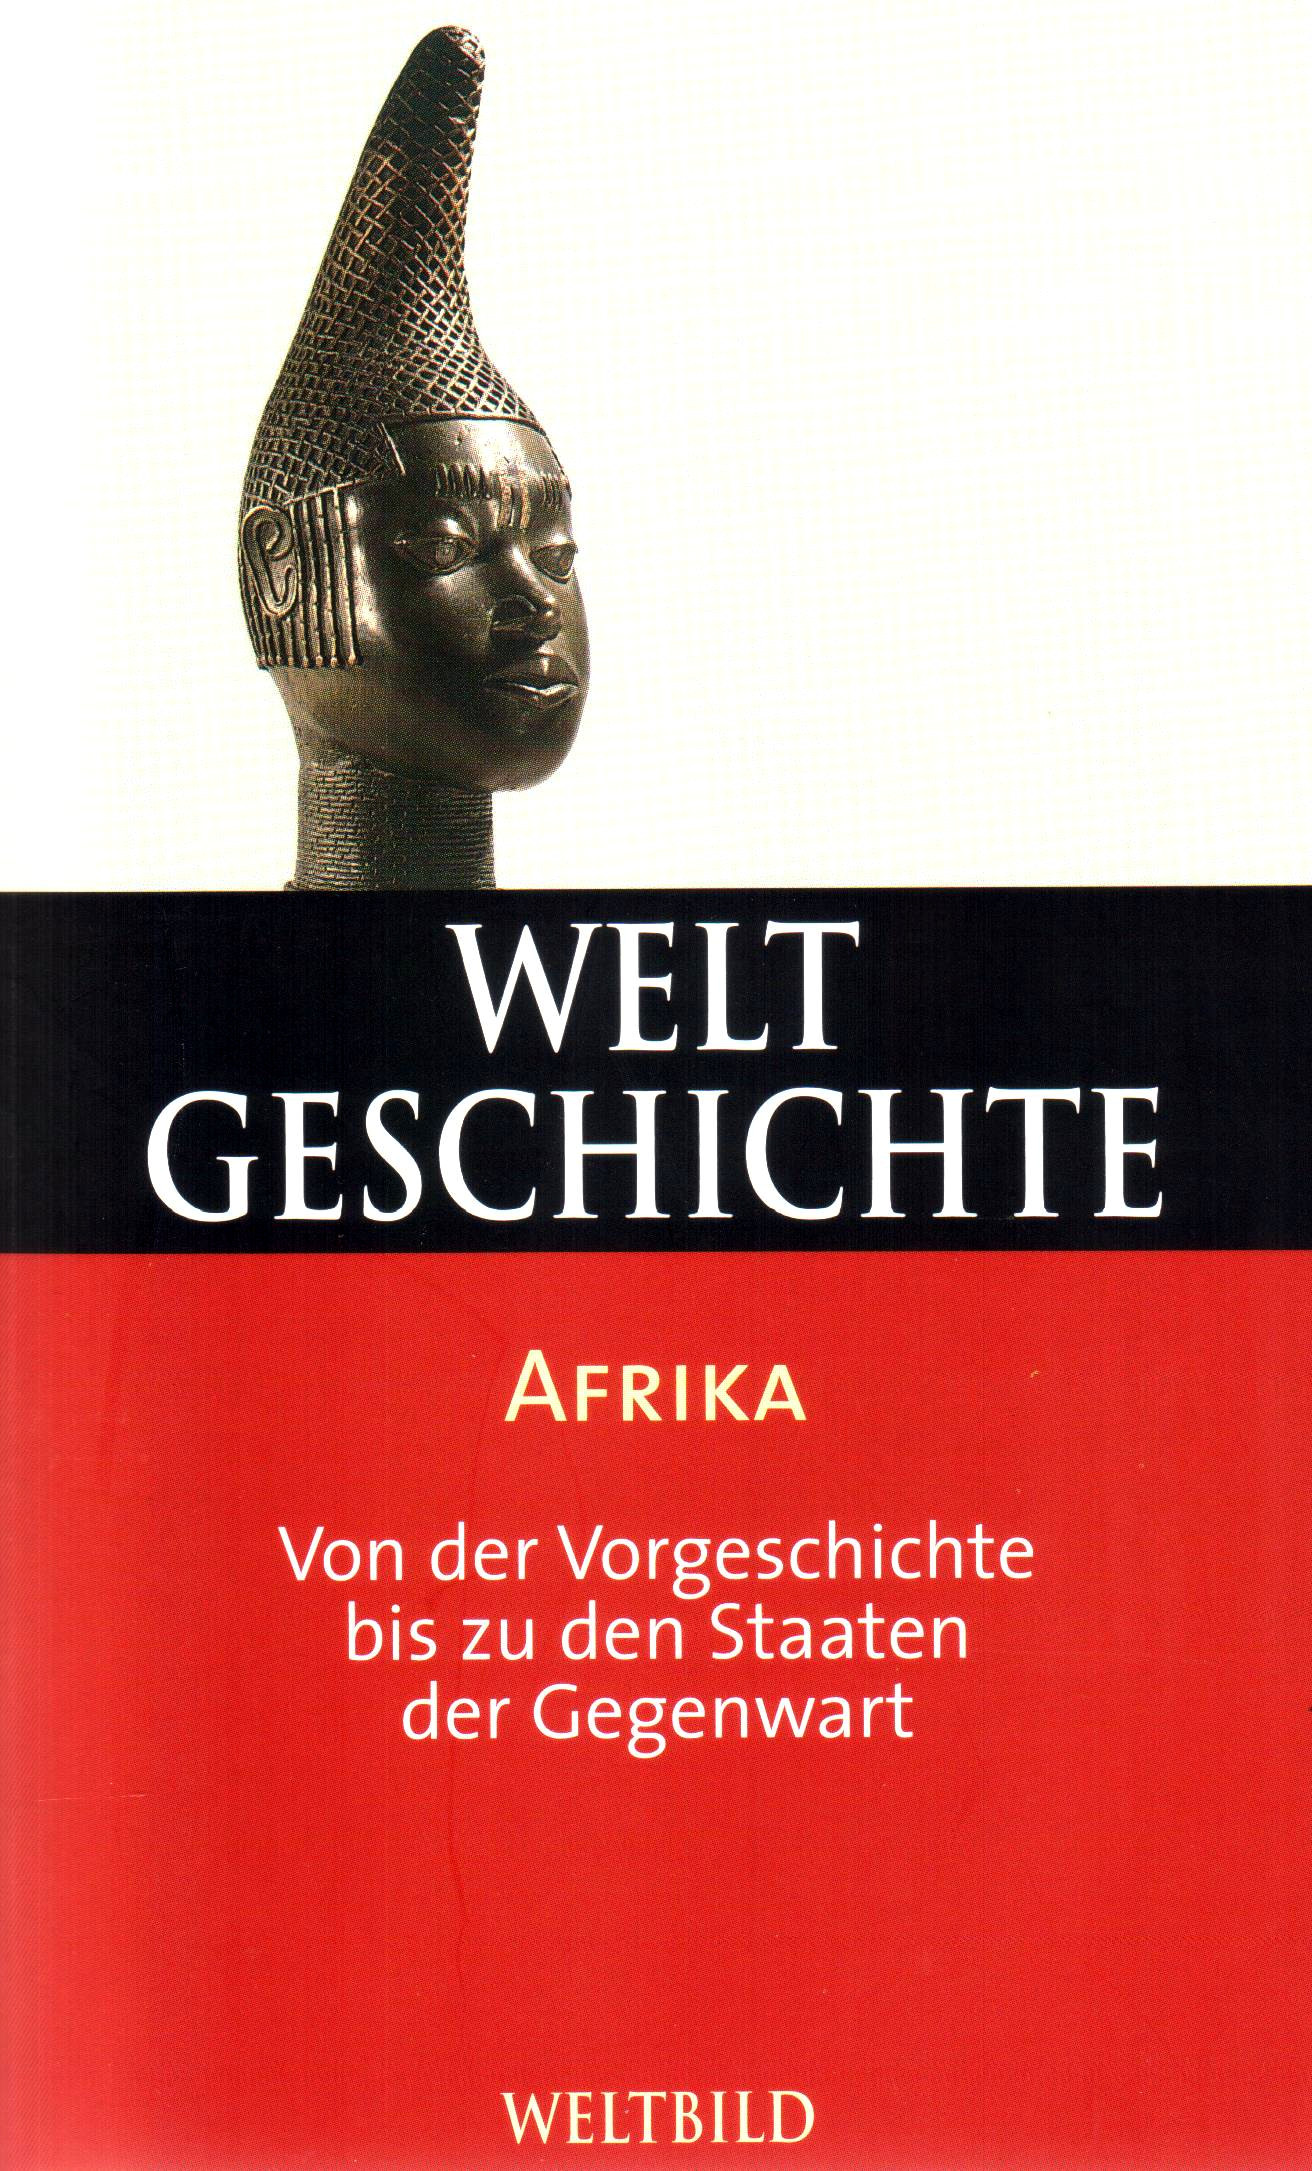 Weltgeschichte (32) Afrika – Von der Vorgeschichte bis zu den Staaten der Gegenwart